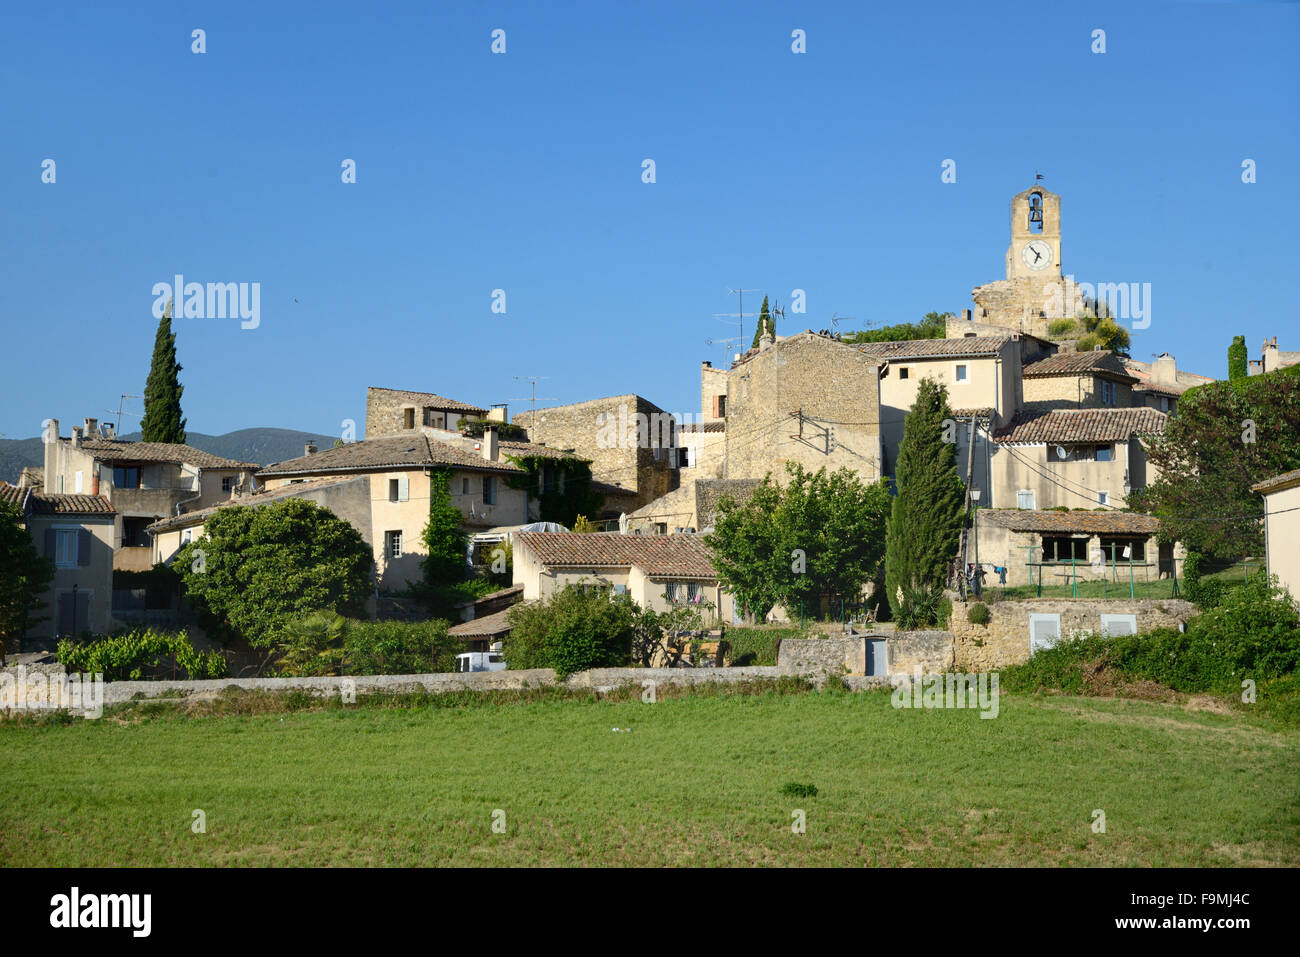 Blick auf das Dorf Lourmarin in den Regionalpark Luberon Vaucluse Provence Frankreich Stockfoto